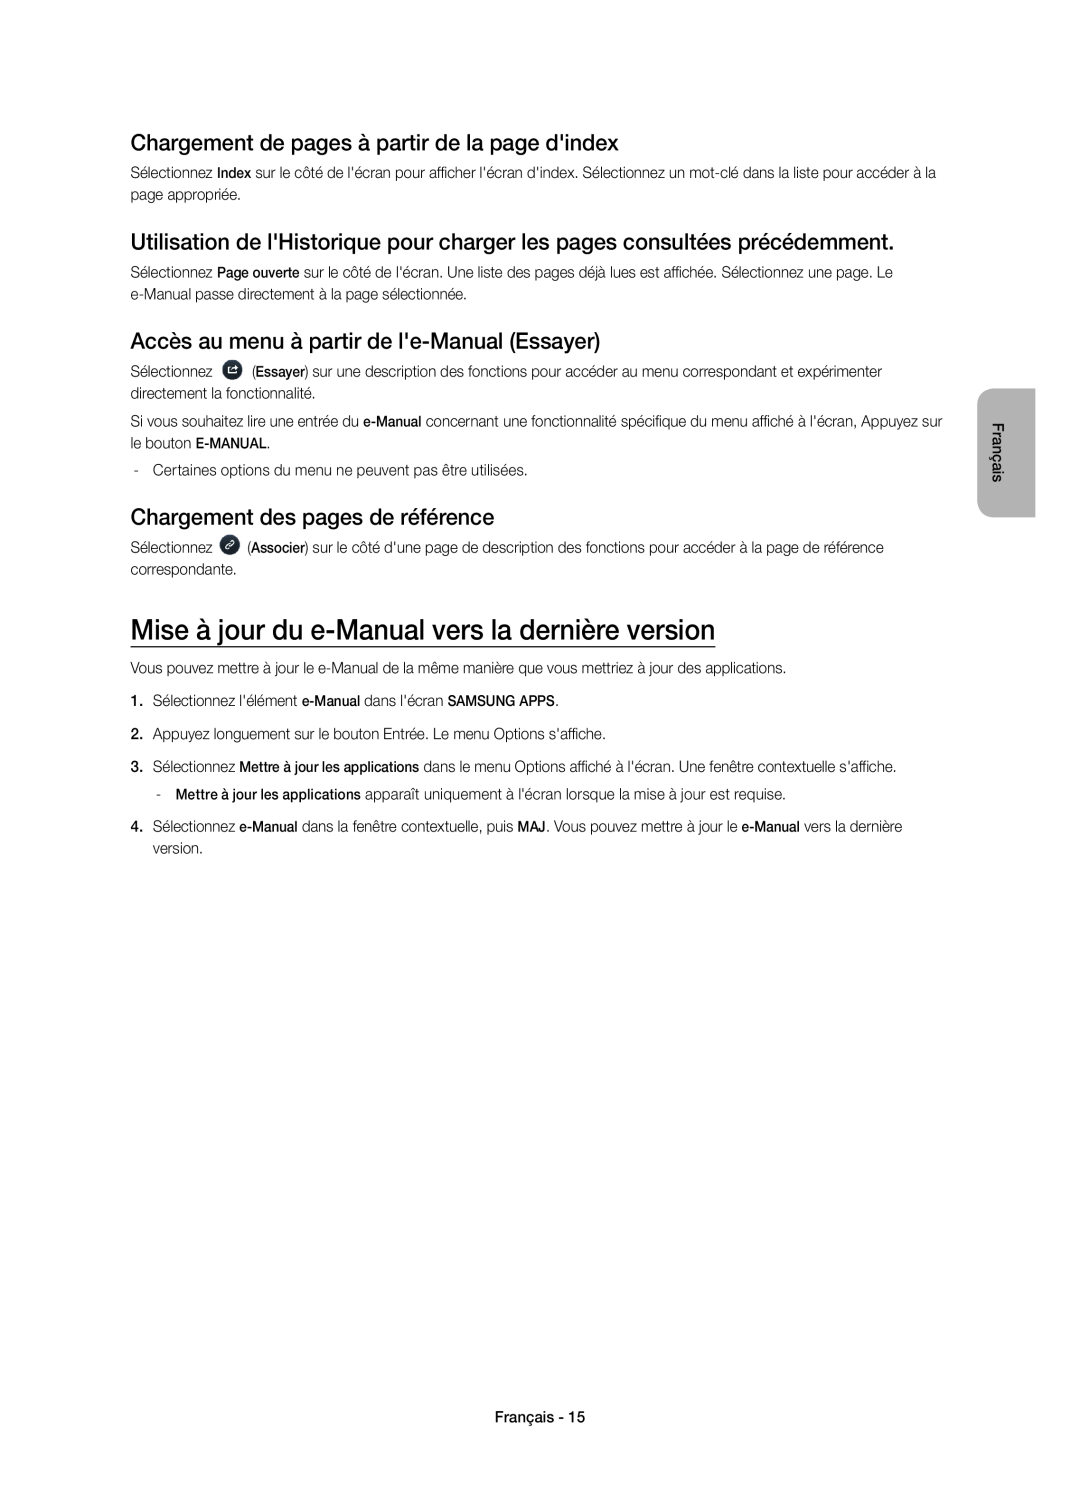 Samsung UE40H5303AWXXN Mise à jour du e-Manual vers la dernière version, Chargement de pages à partir de la page dindex 